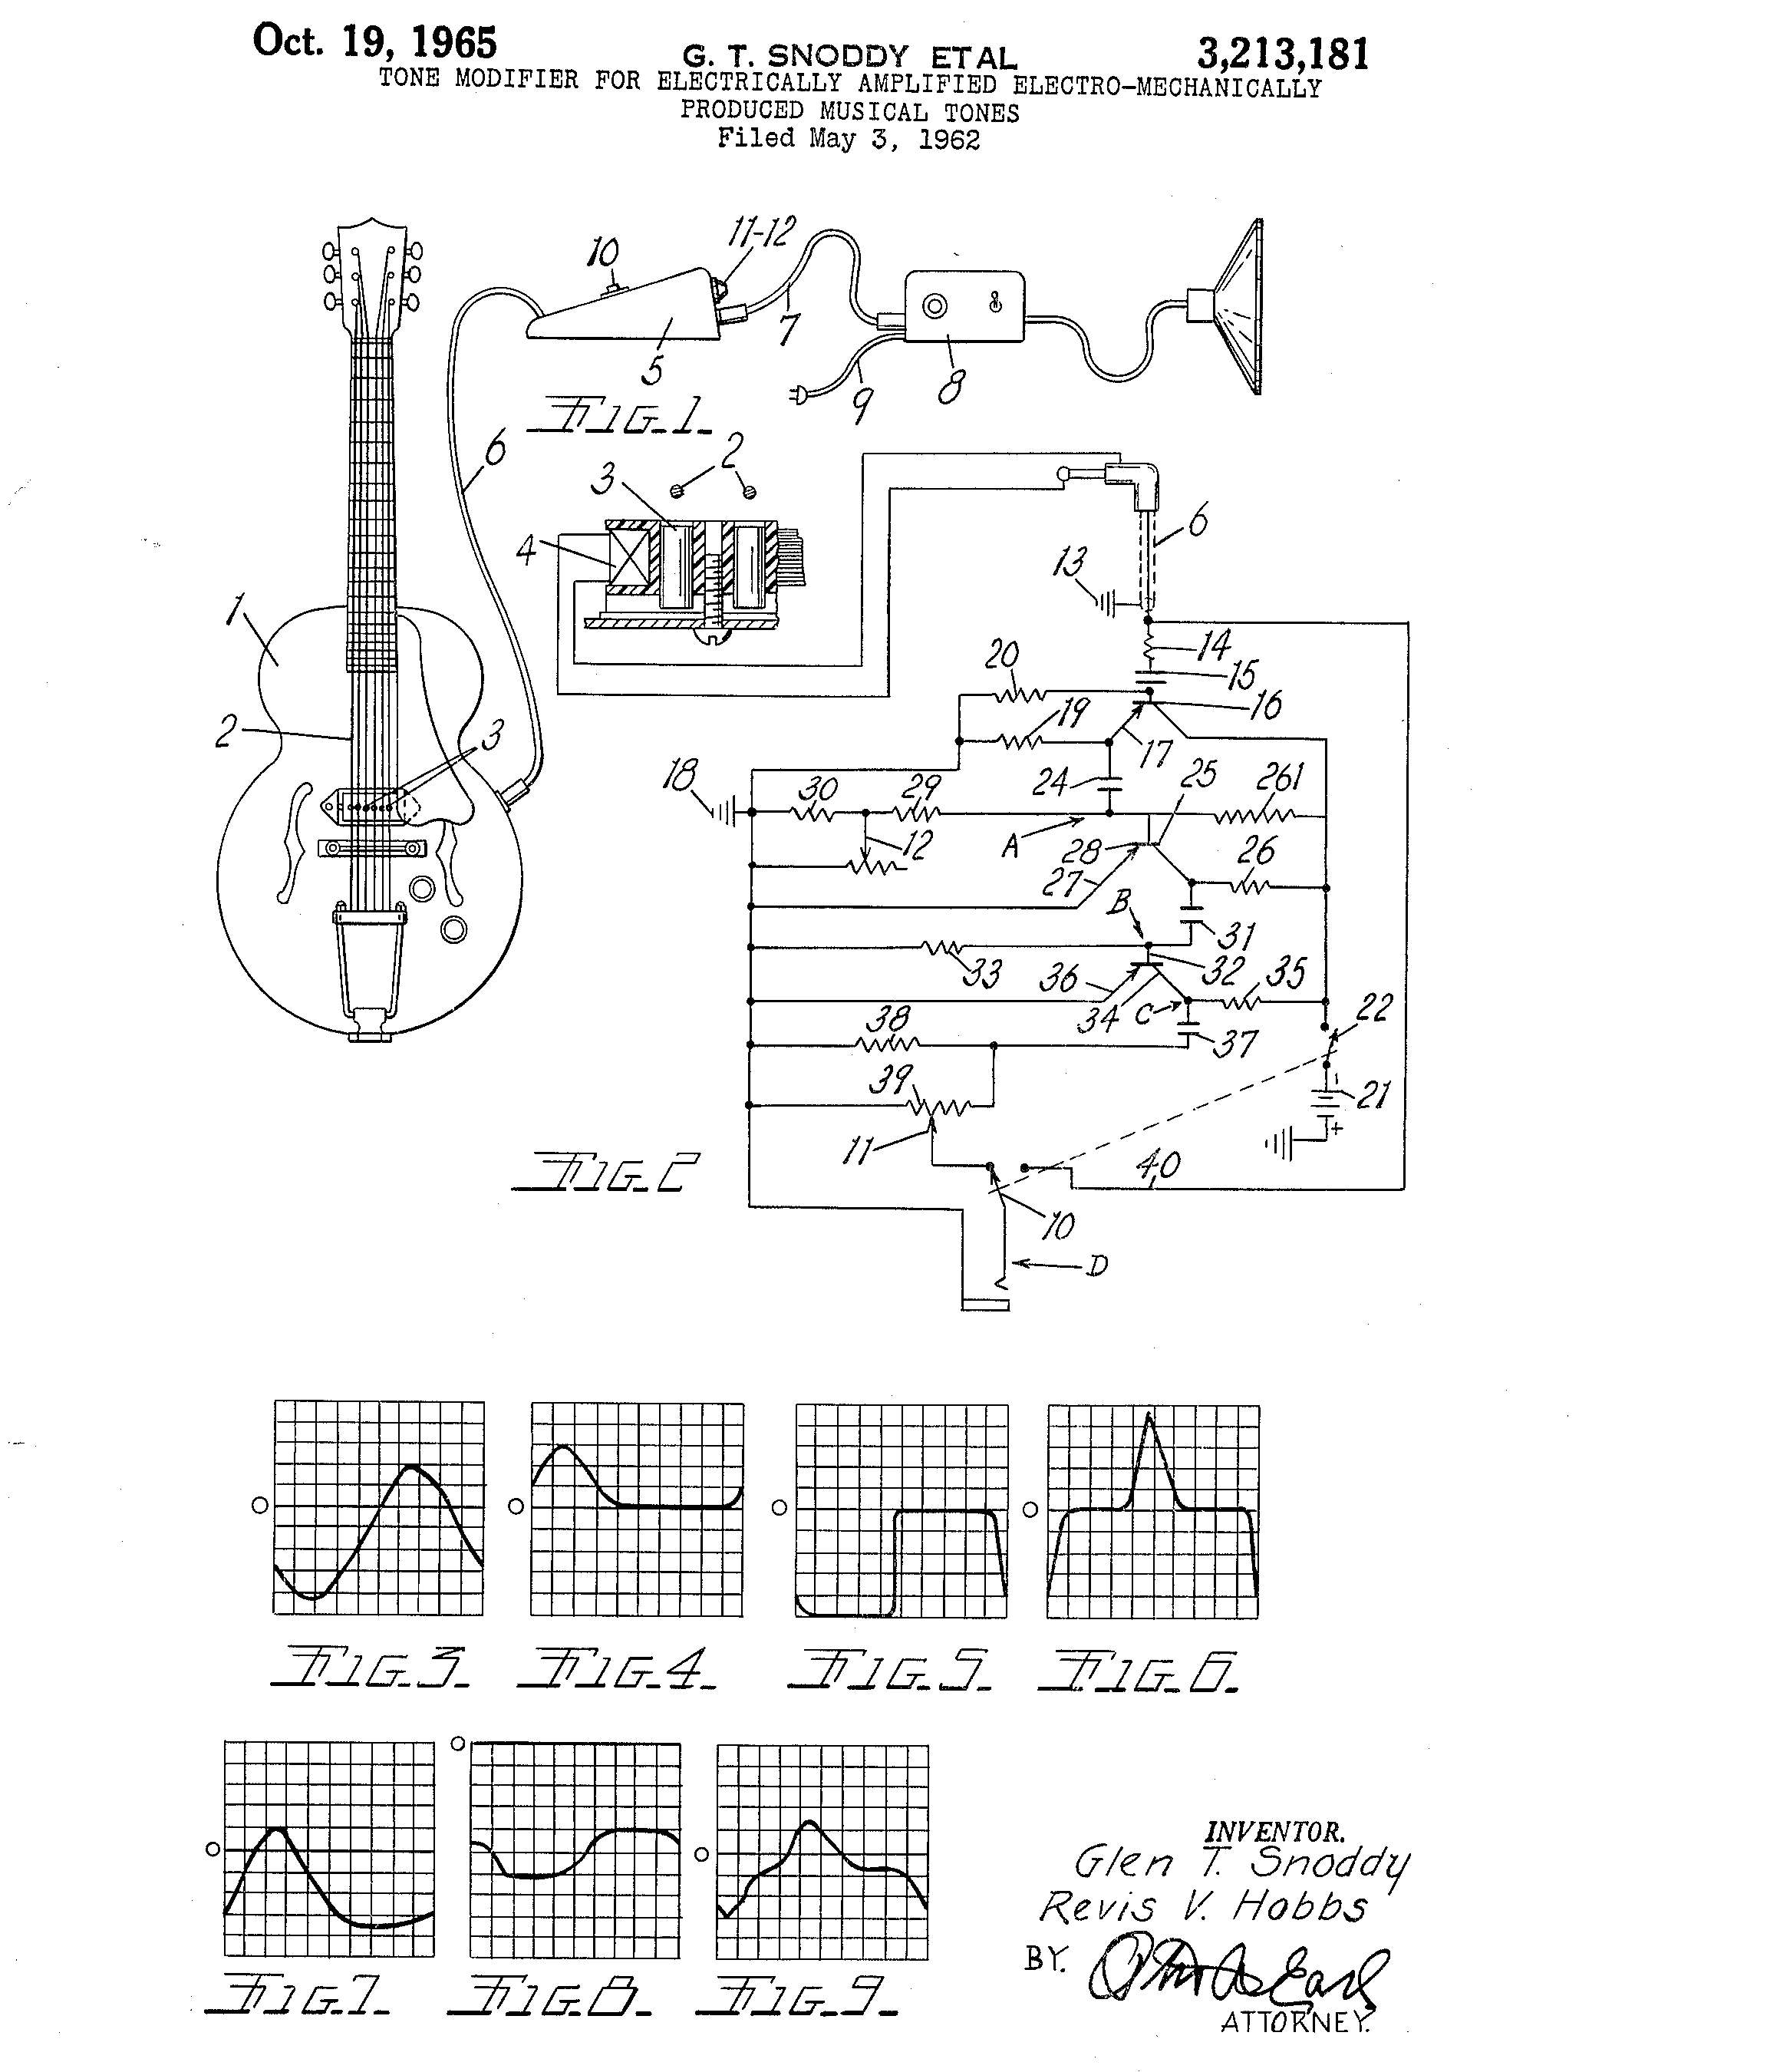 US Patent #3,213,181